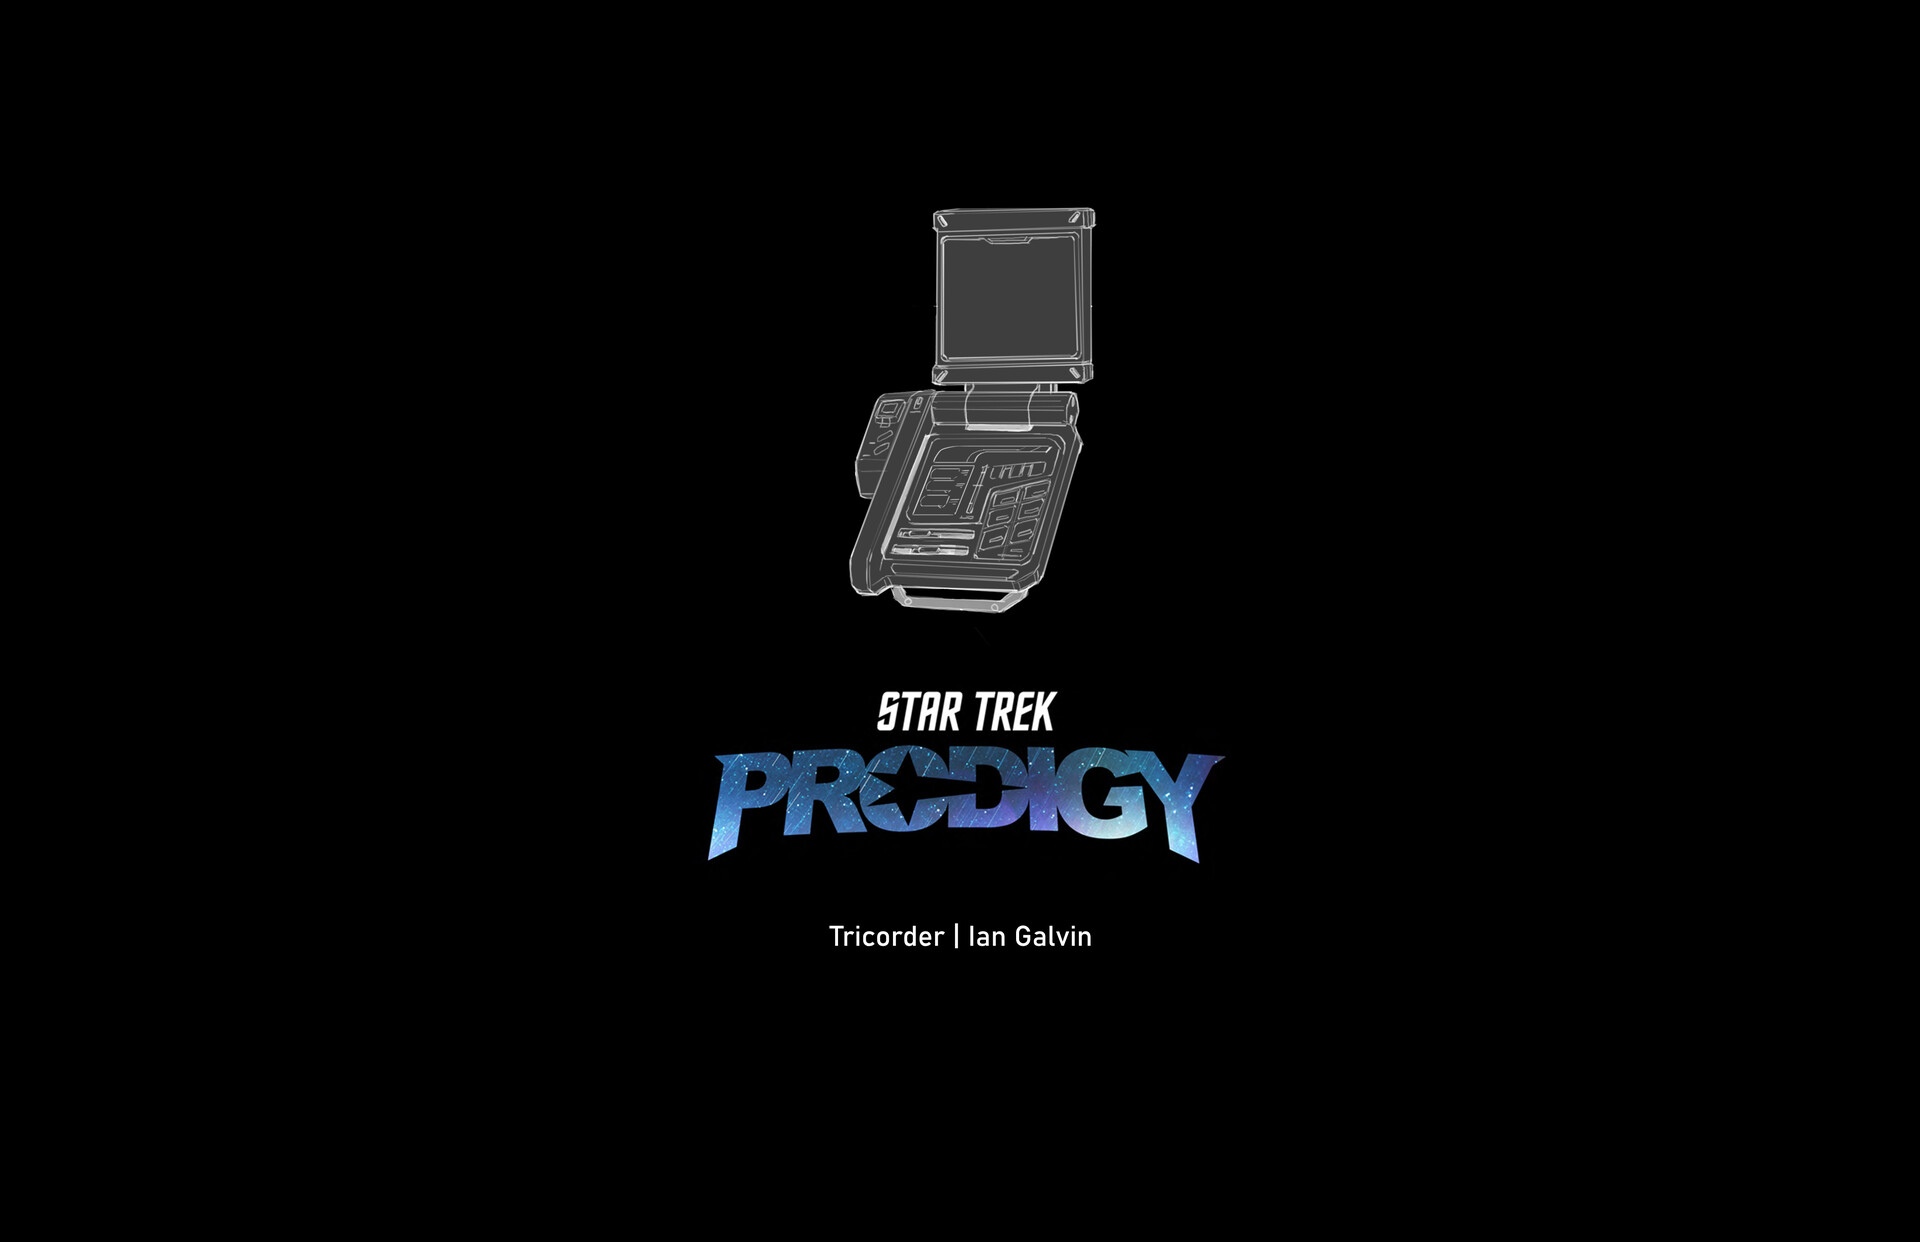 ArtStation - Star Trek: Prodigy Tricorder Design